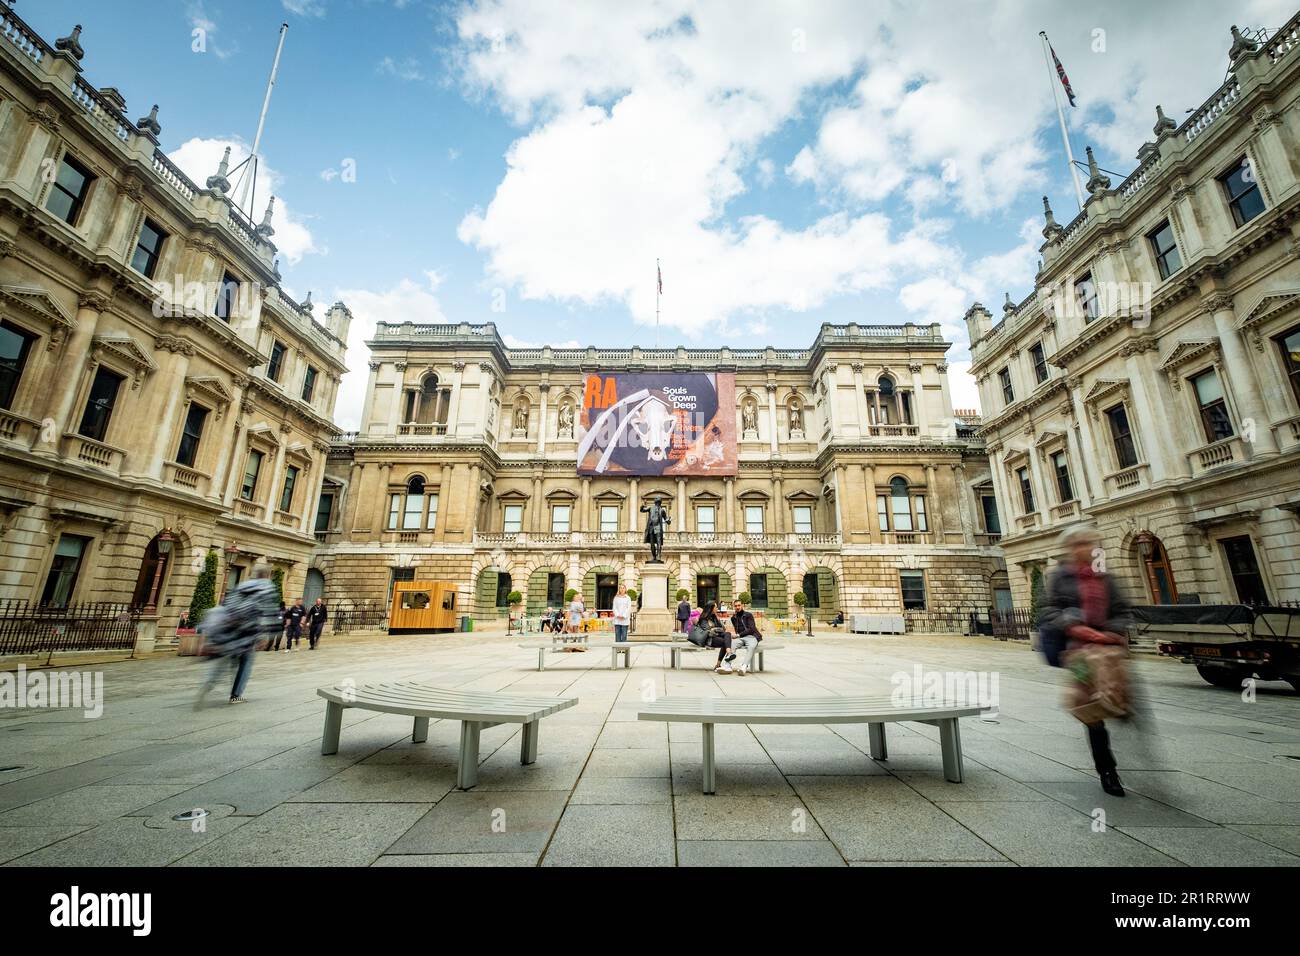 Londres - 2023 mai : la Royal Academy of Arts de Mayfair, Londres. Un musée d'art classique et une attraction populaire pour les visiteurs Banque D'Images